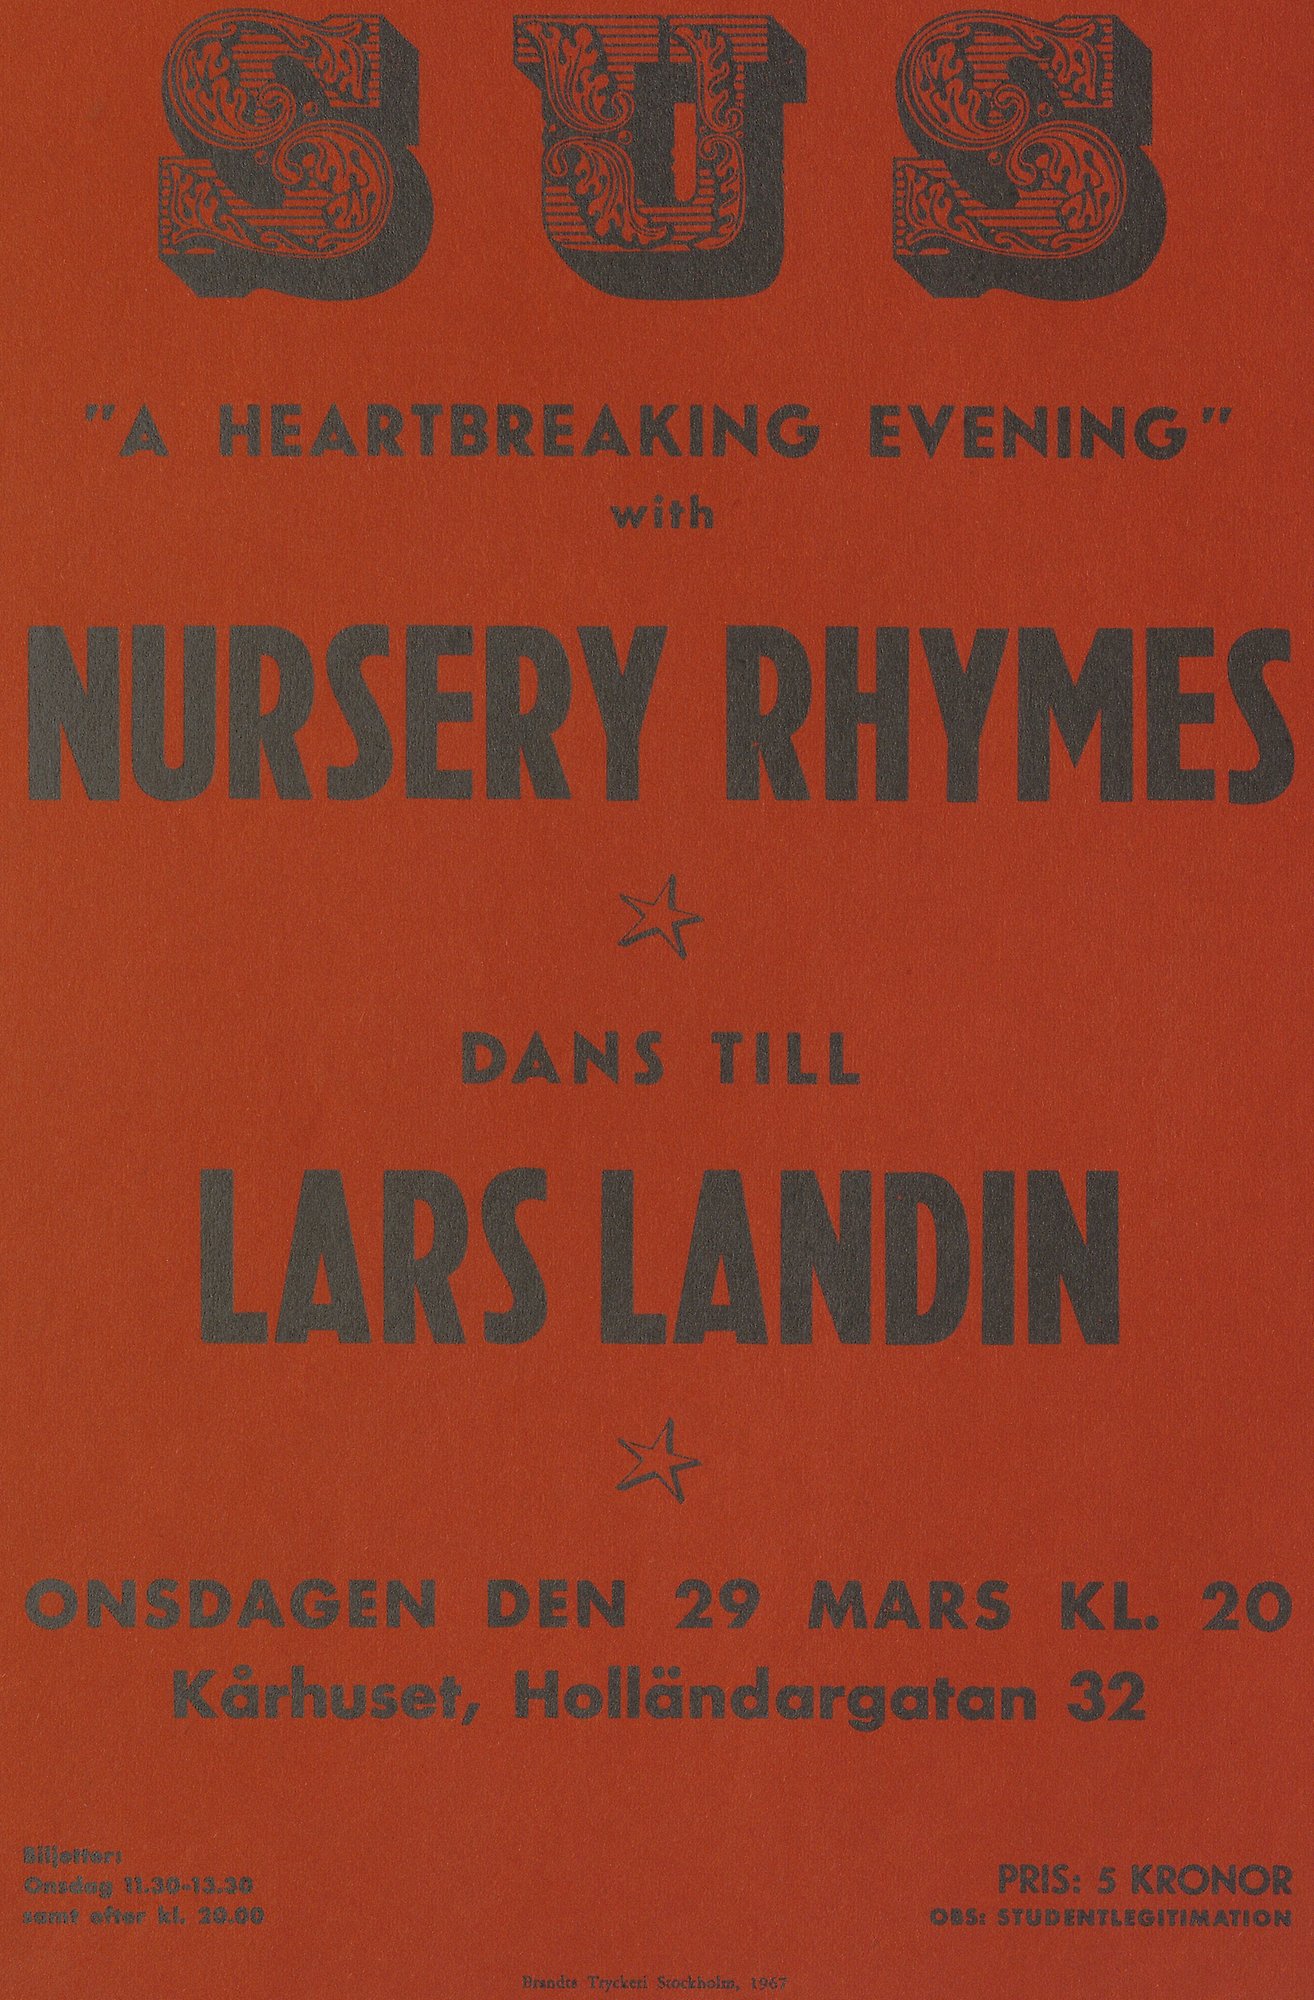 Röd affisch med svart text. Text: "A heartbreaking evening" with Nursery Rhymes.